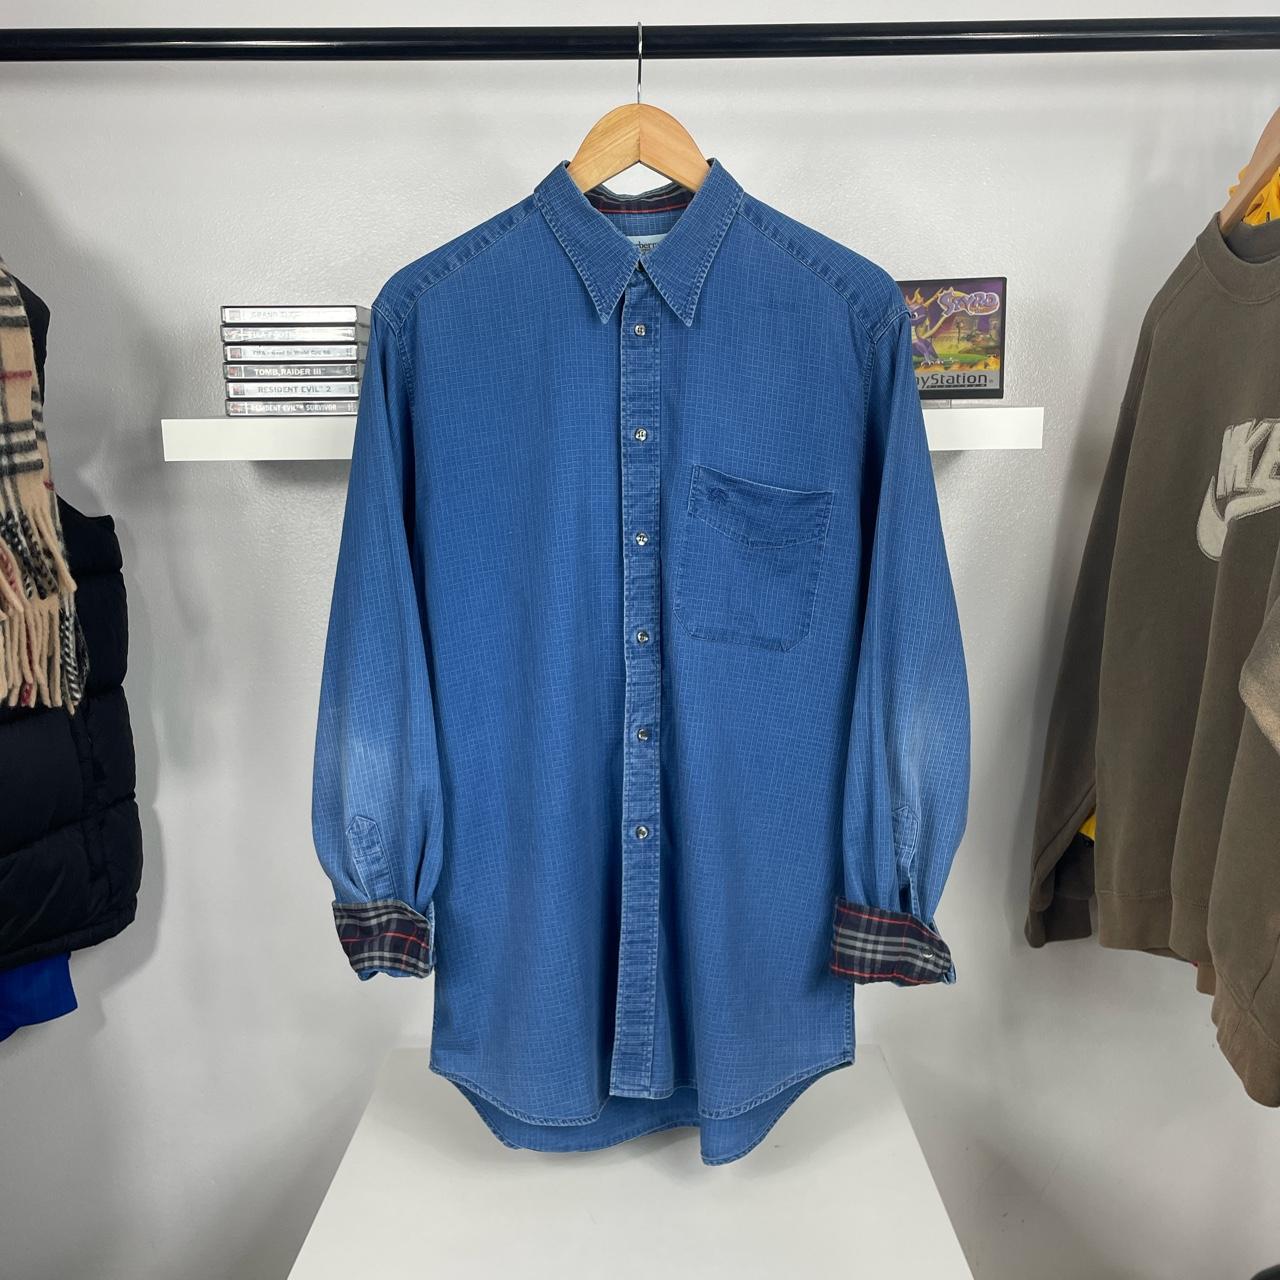 Burberry Men's Navy and Blue Shirt | Depop